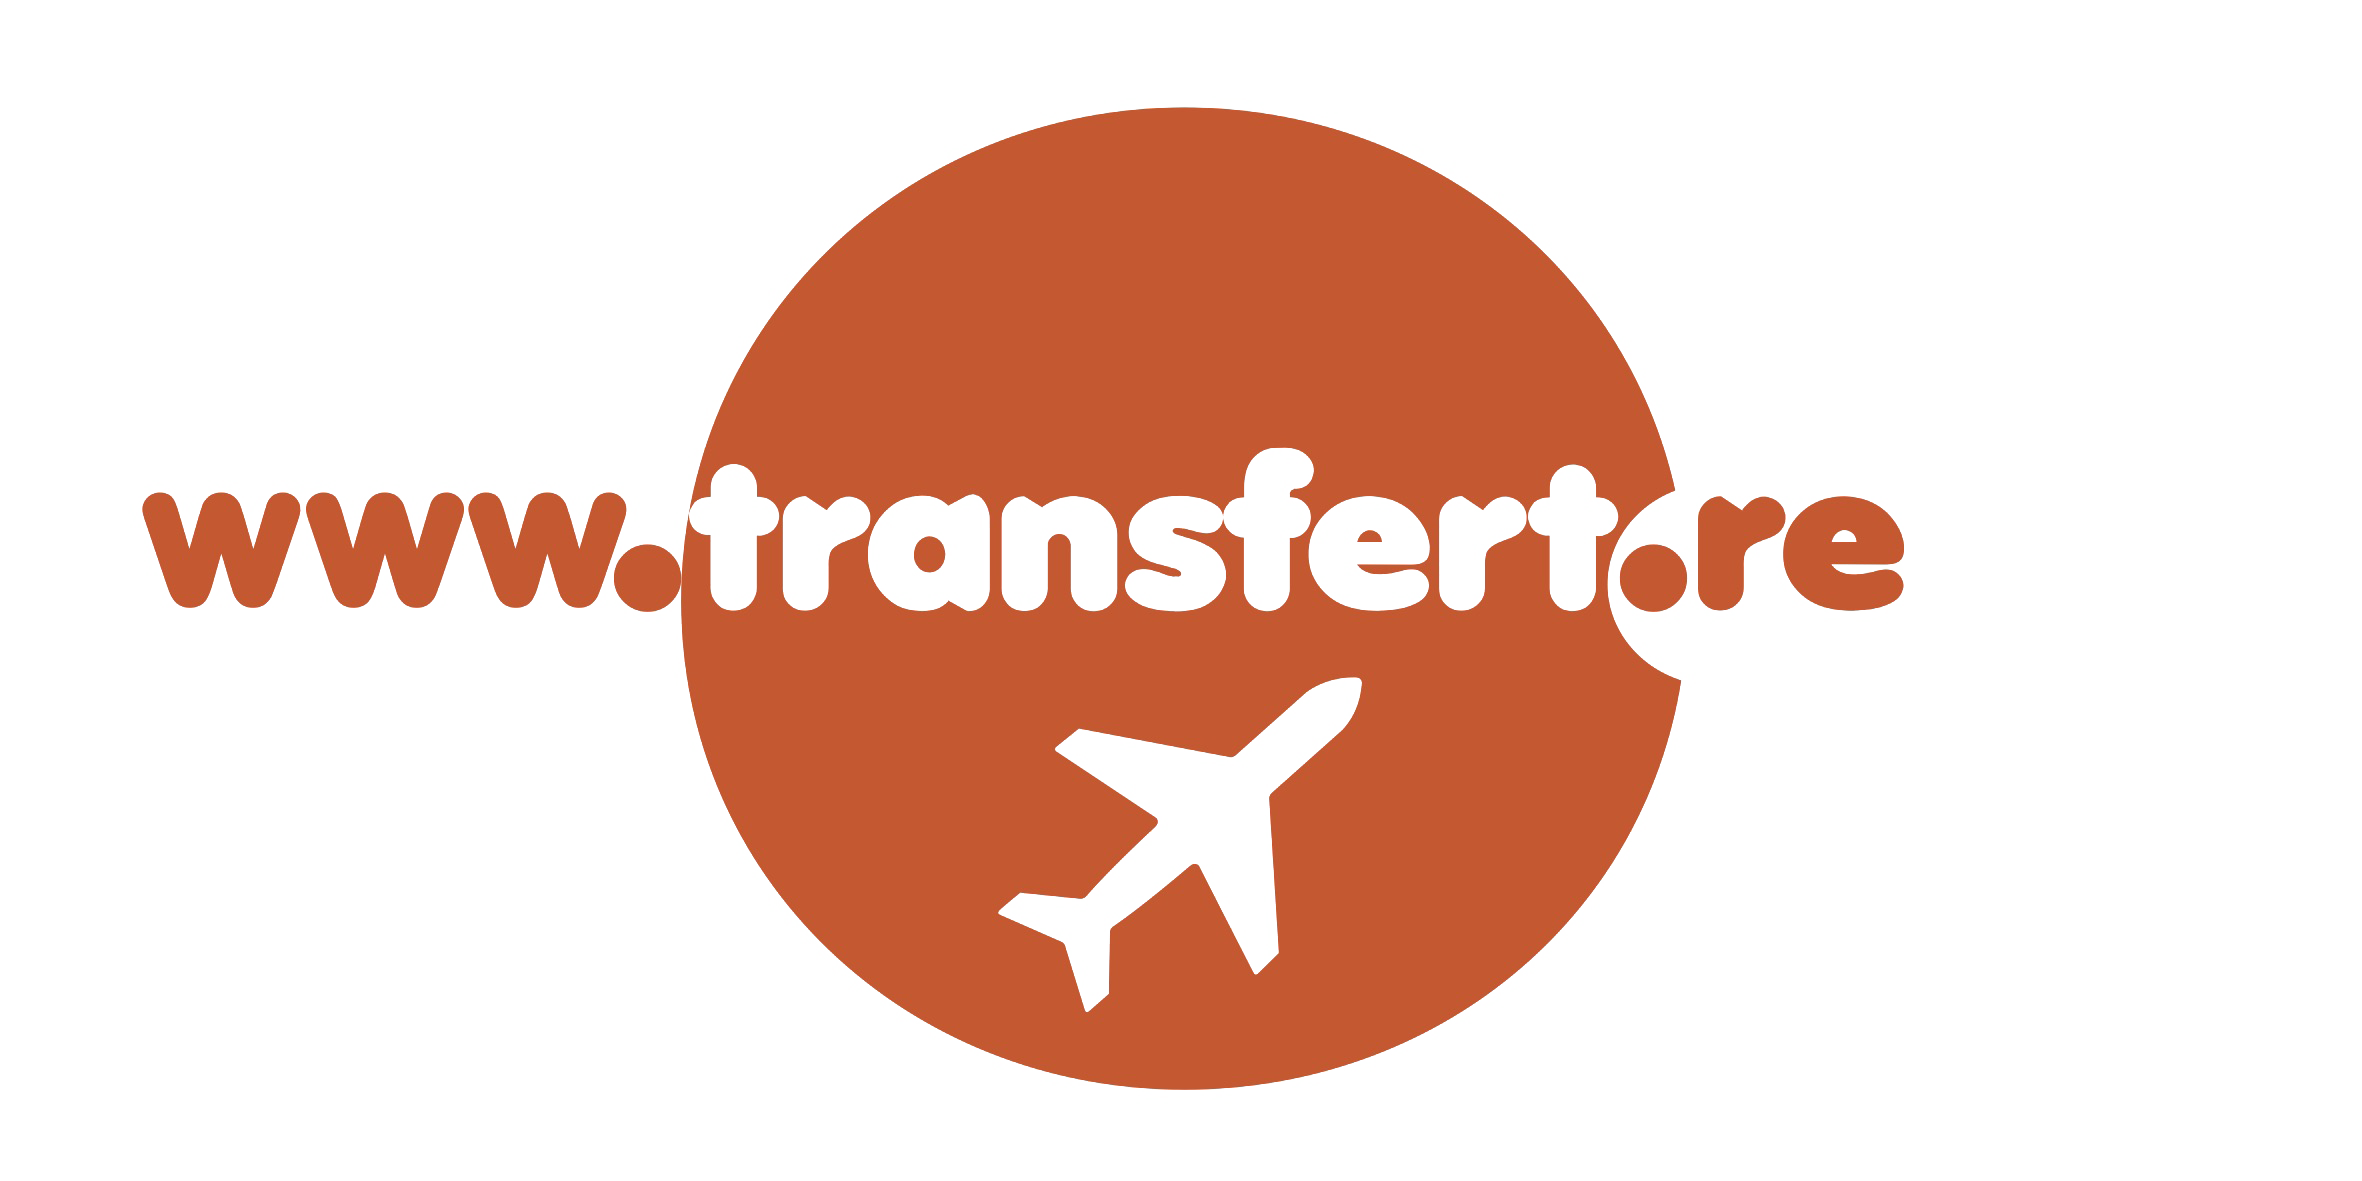 Transfert.re